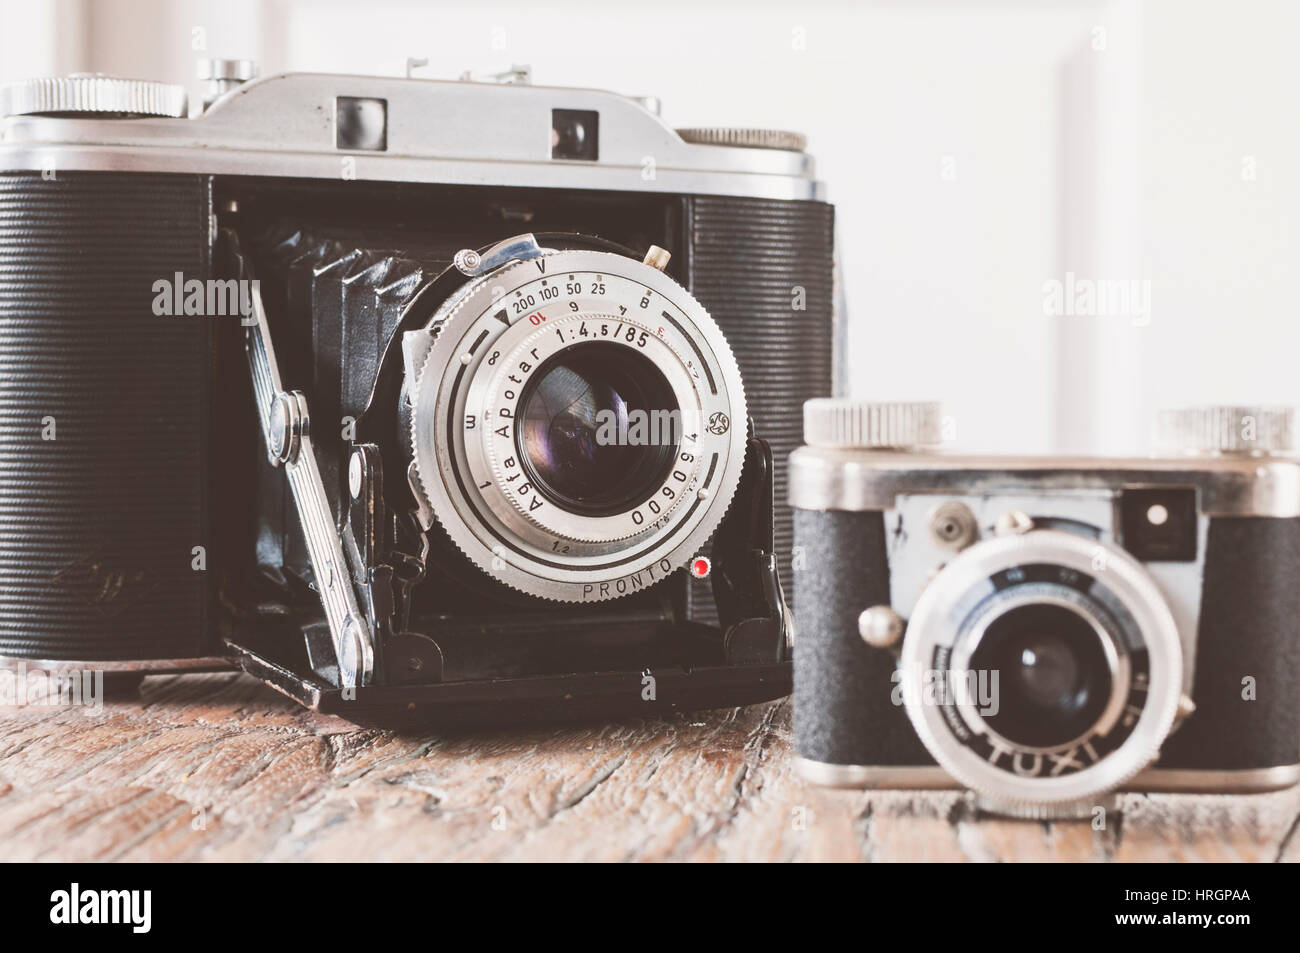 Versteckte Kameras Stockfotos und -bilder Kaufen - Alamy